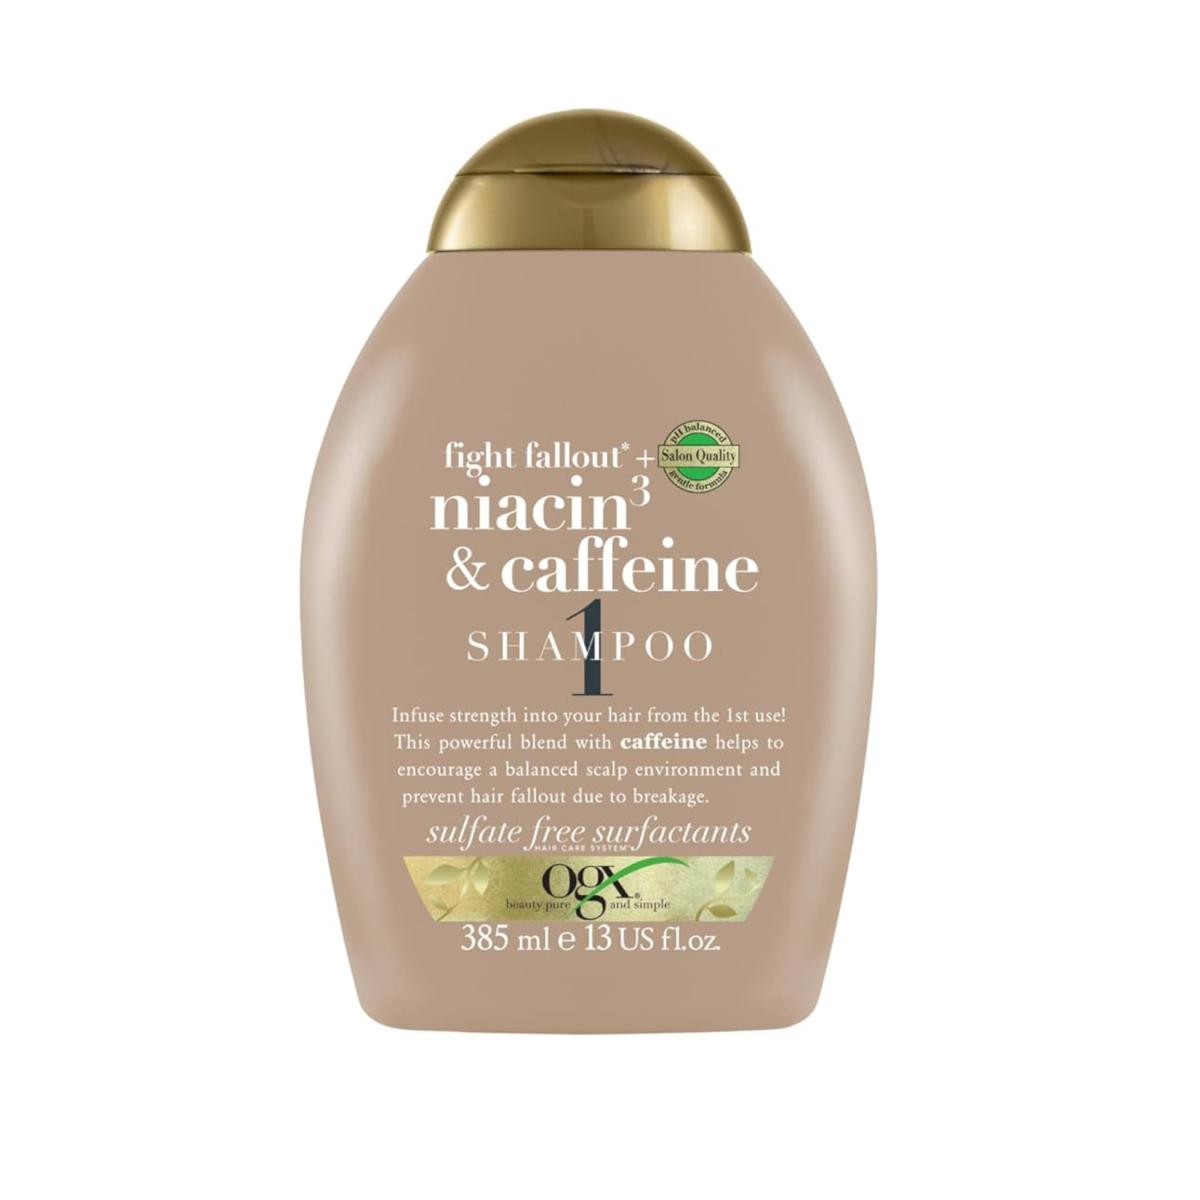 شامپو نیاسین و کافیین - Niacin and caffeine shampoo